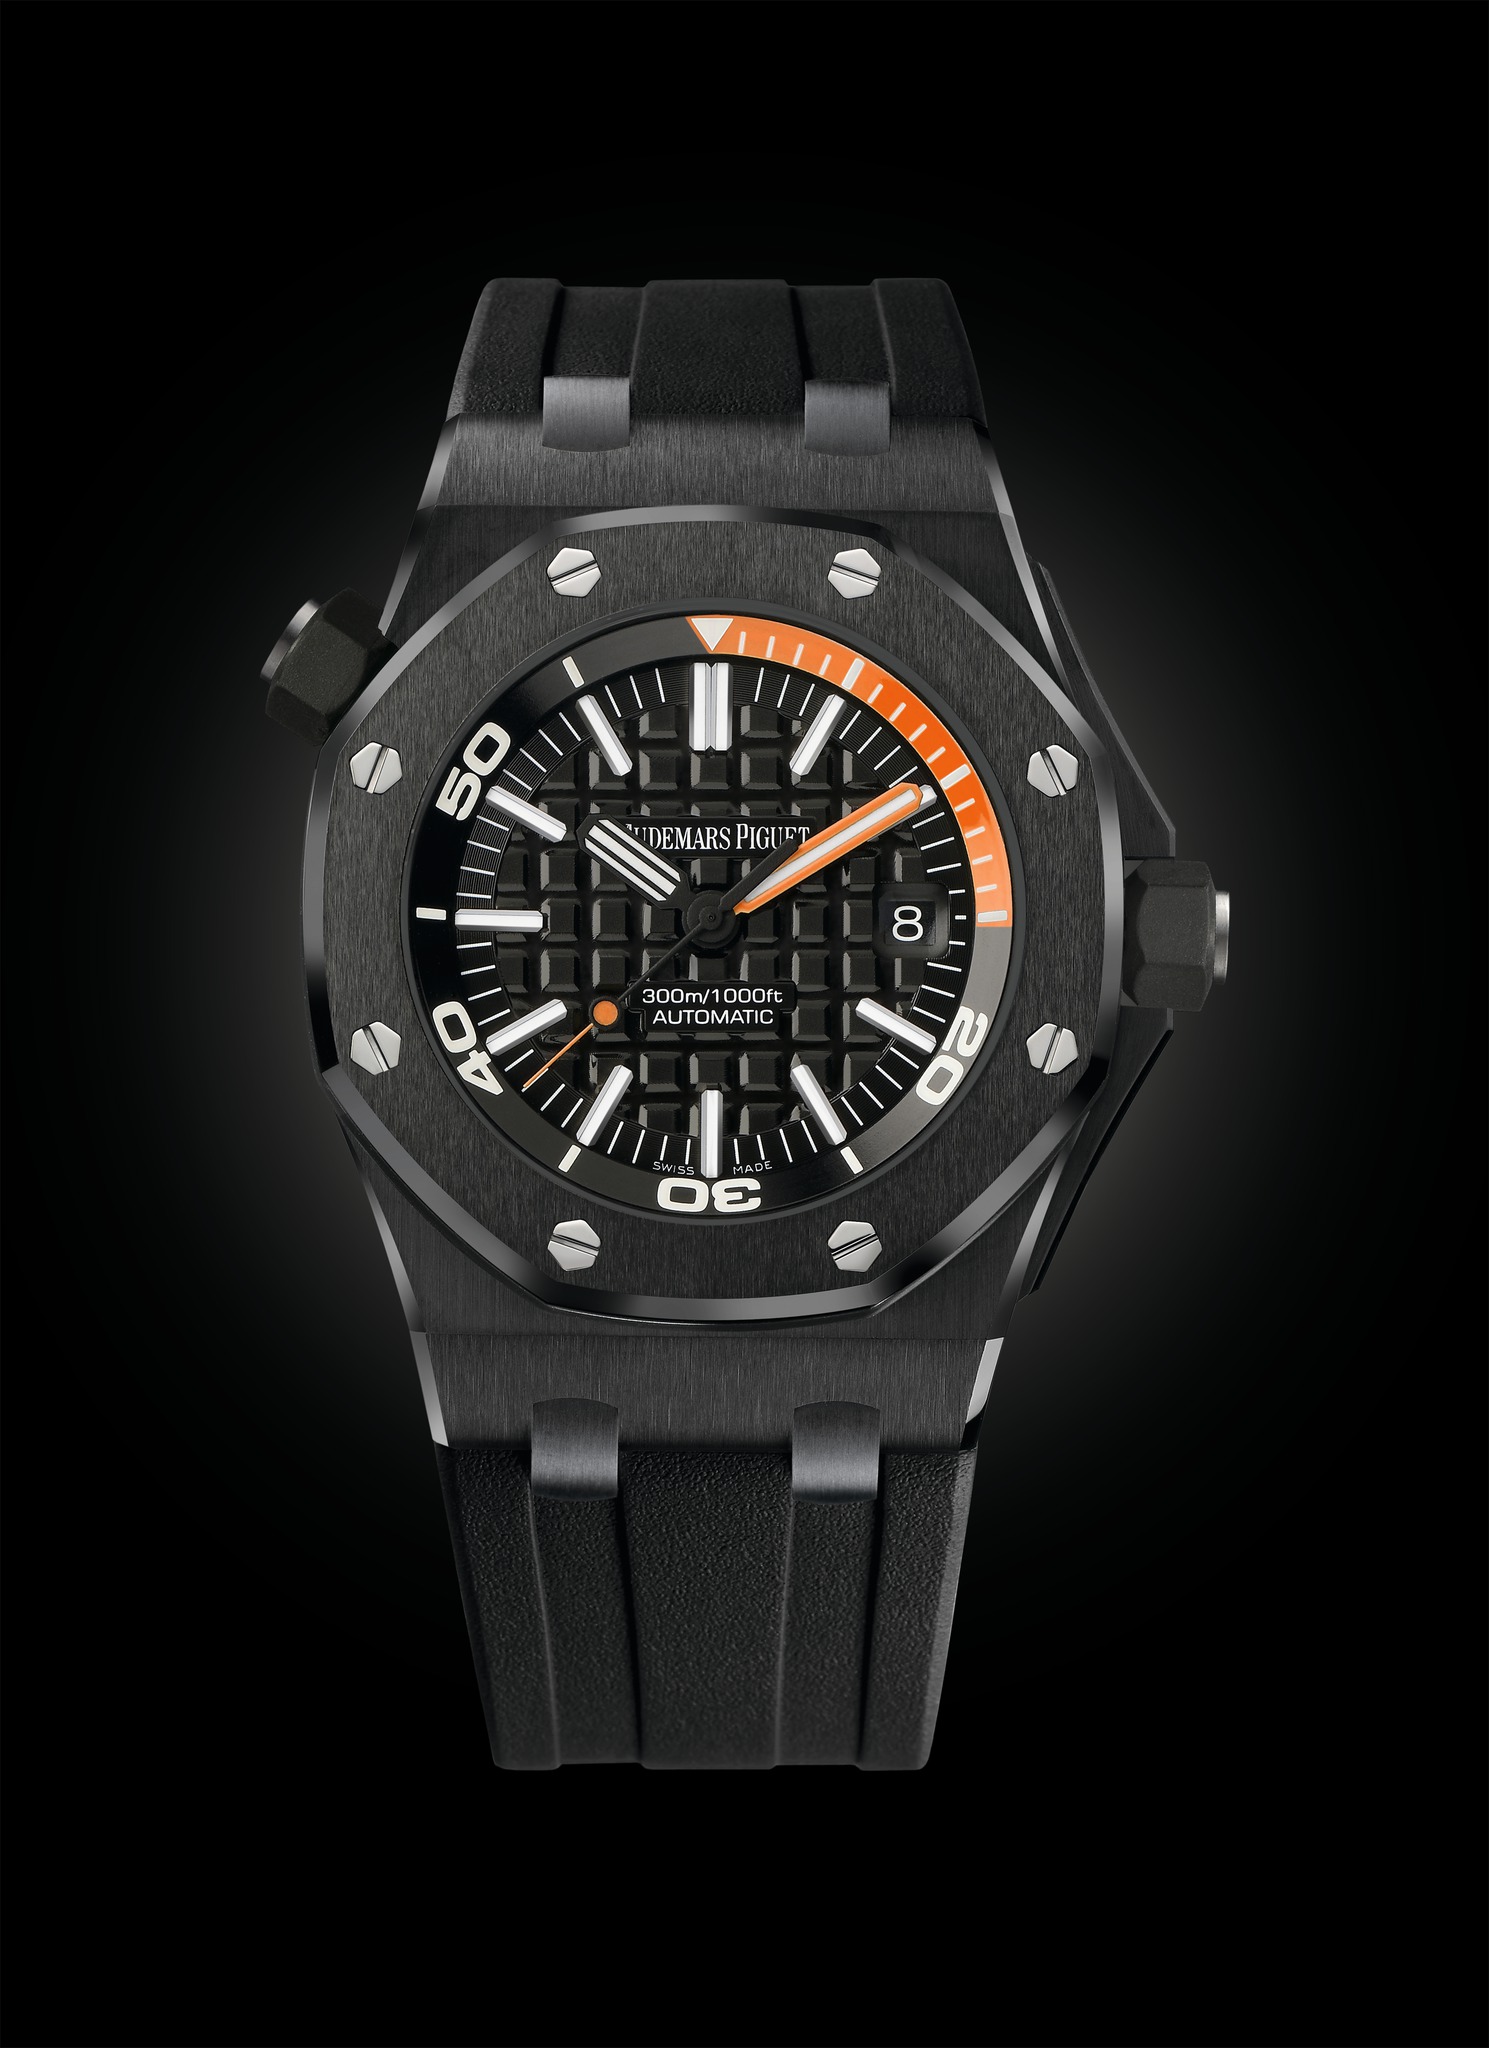 Audemars Piguet Royal Oak Offshore Diver Orange Black Ceramic watch REF: 15707CE.OO.A002CA.01